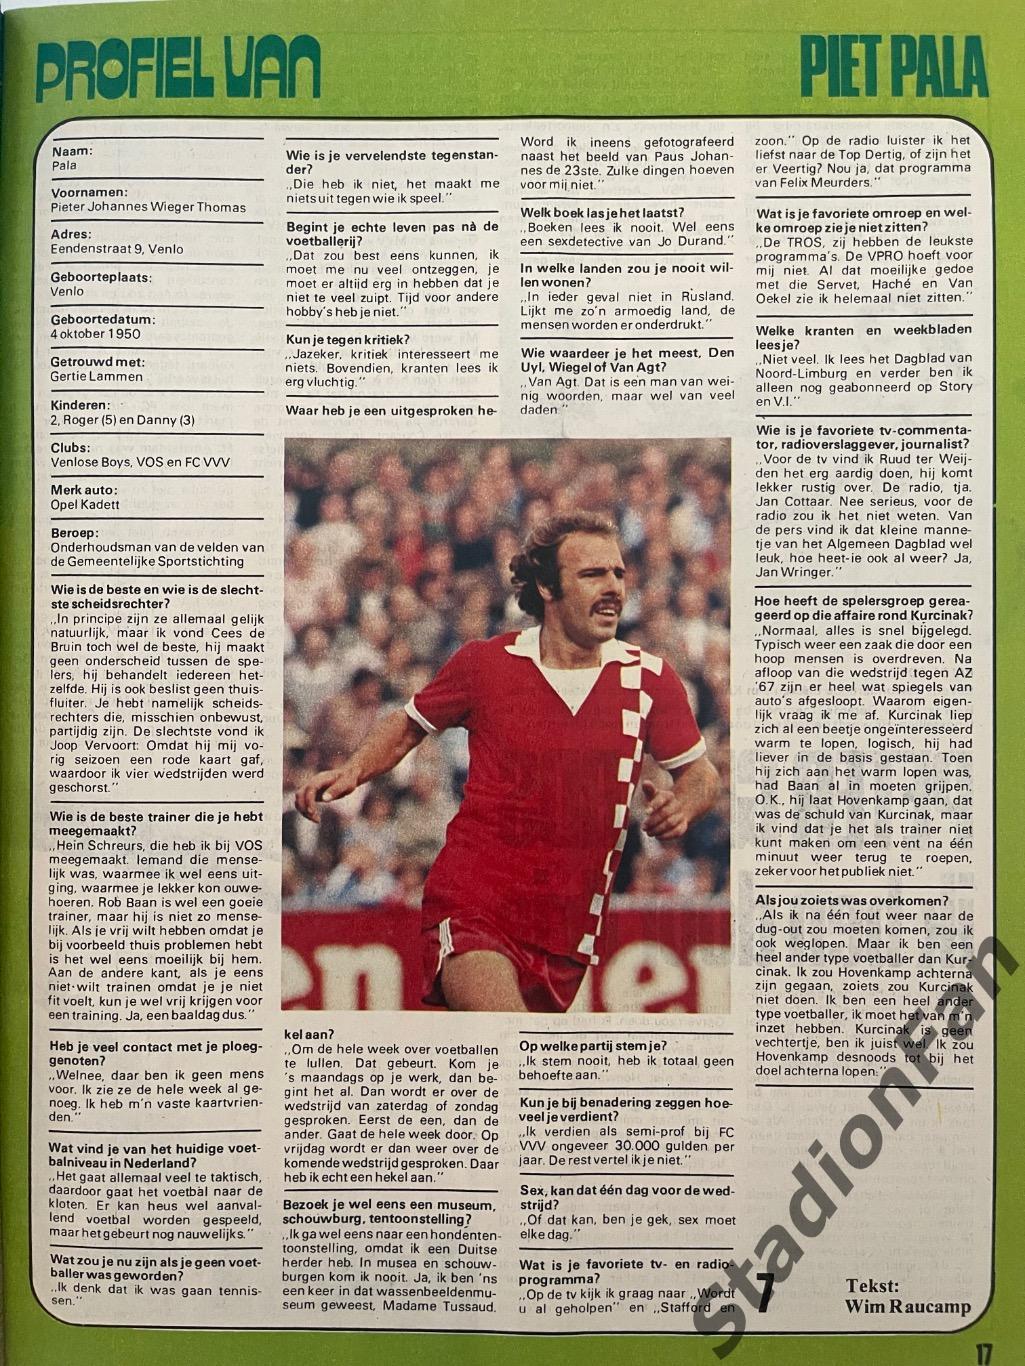 Журнал Voetbal nr.38 - 1977 год. 2